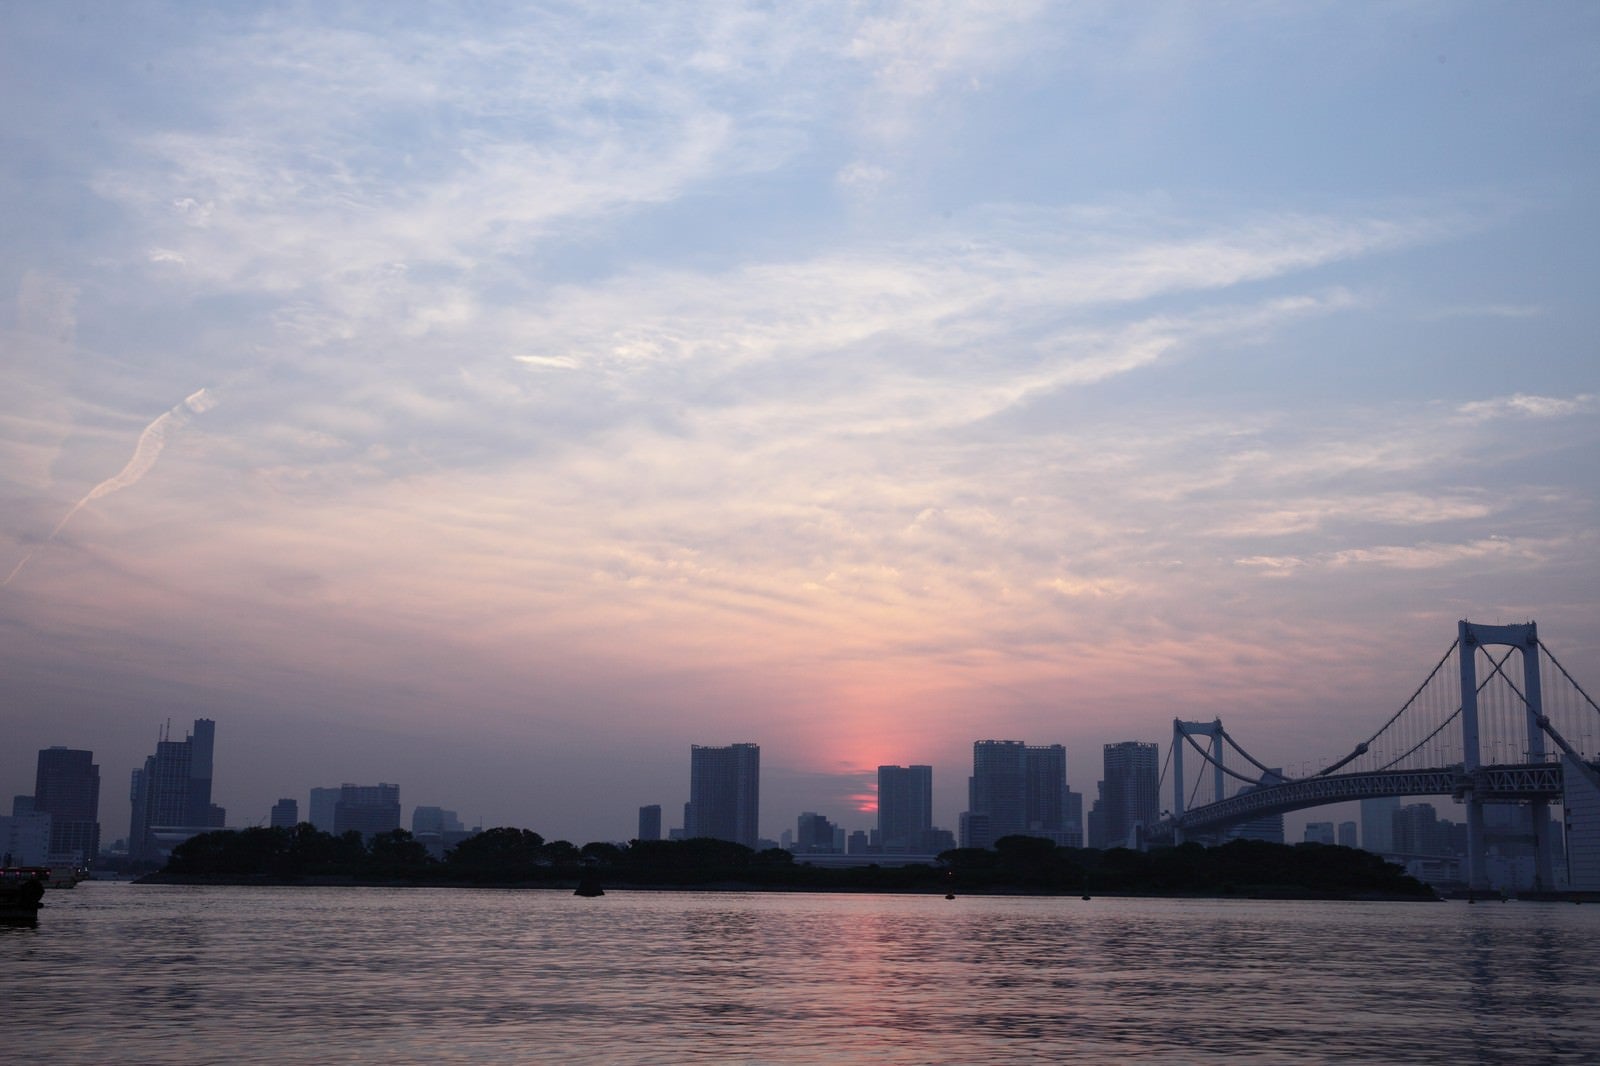 「夕焼けの東京お台場レインボーブリッジ周辺」の写真